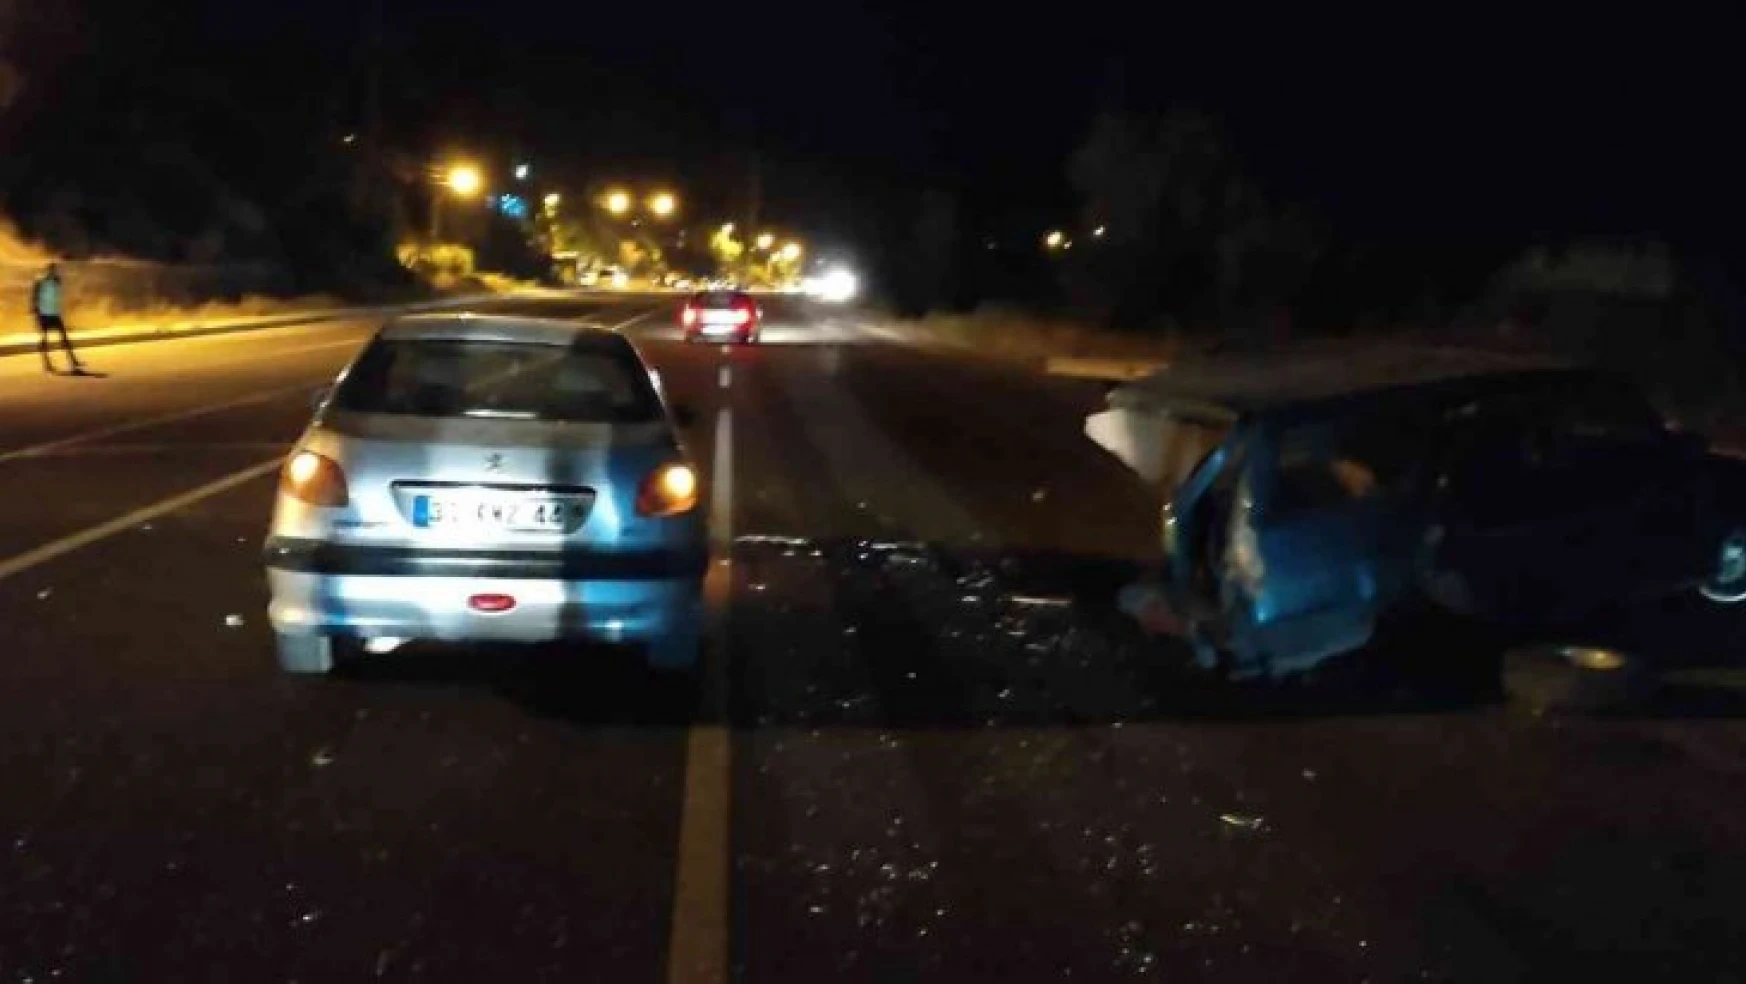 Darende'de trafik kazası: 1 yaralı